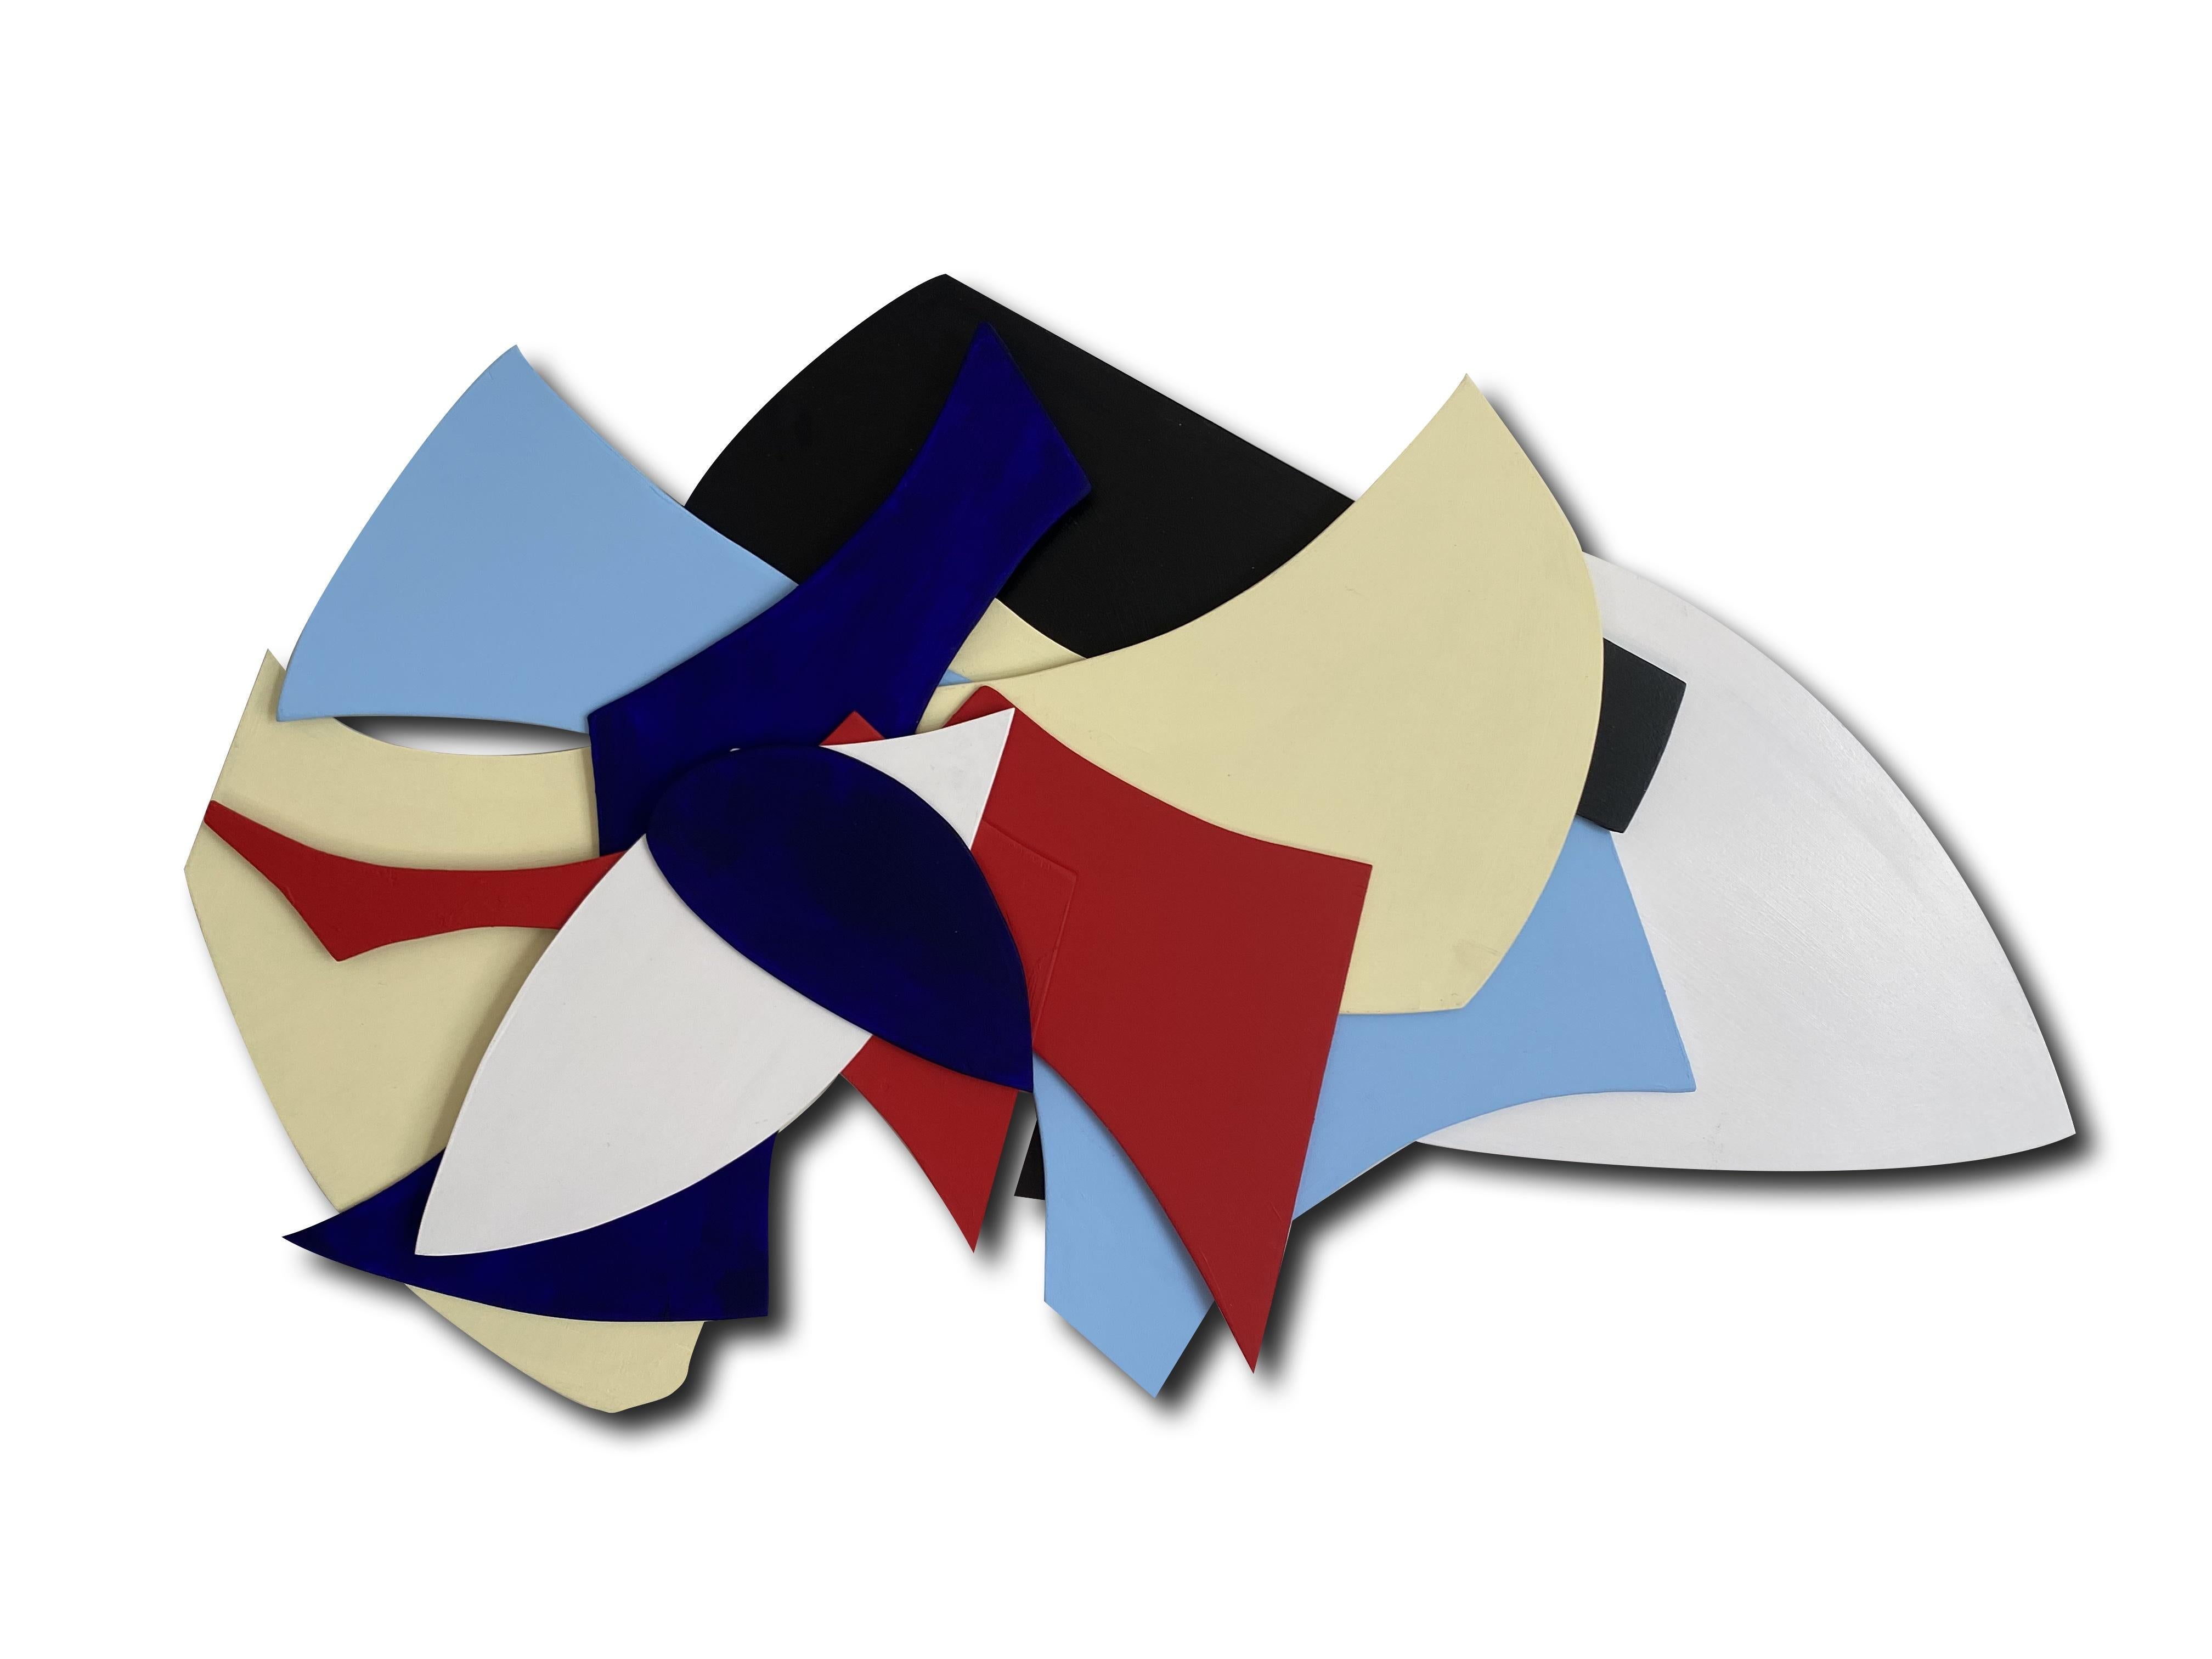 GS03, Geometrische abstrakte mehrfarbige 3D-Wandskulptur in Mischtechnik – Mixed Media Art von Zach Touchon